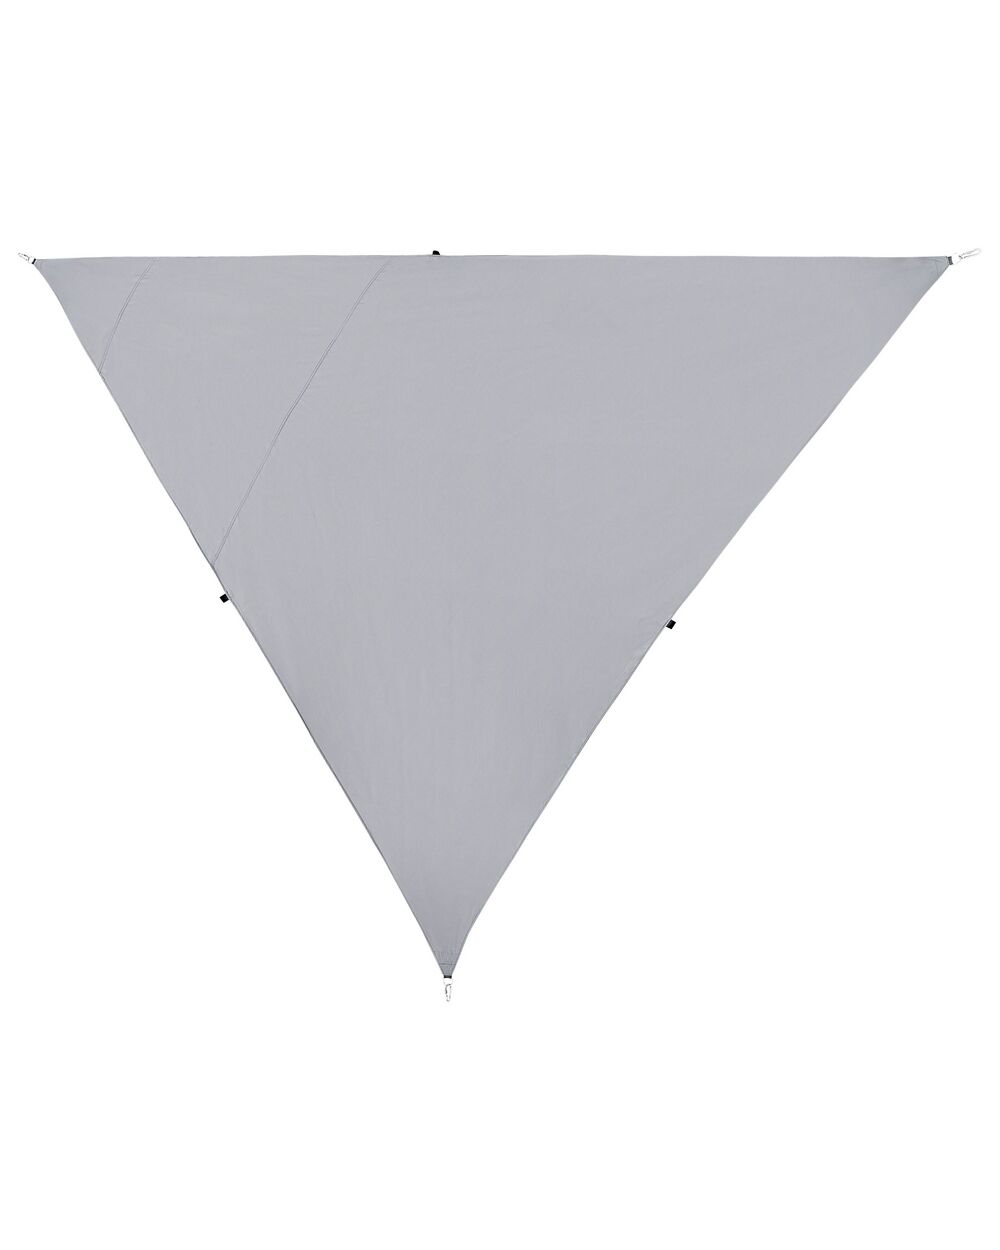 Toldo vela triangular 300 x 300 x 0.1 cm color gris